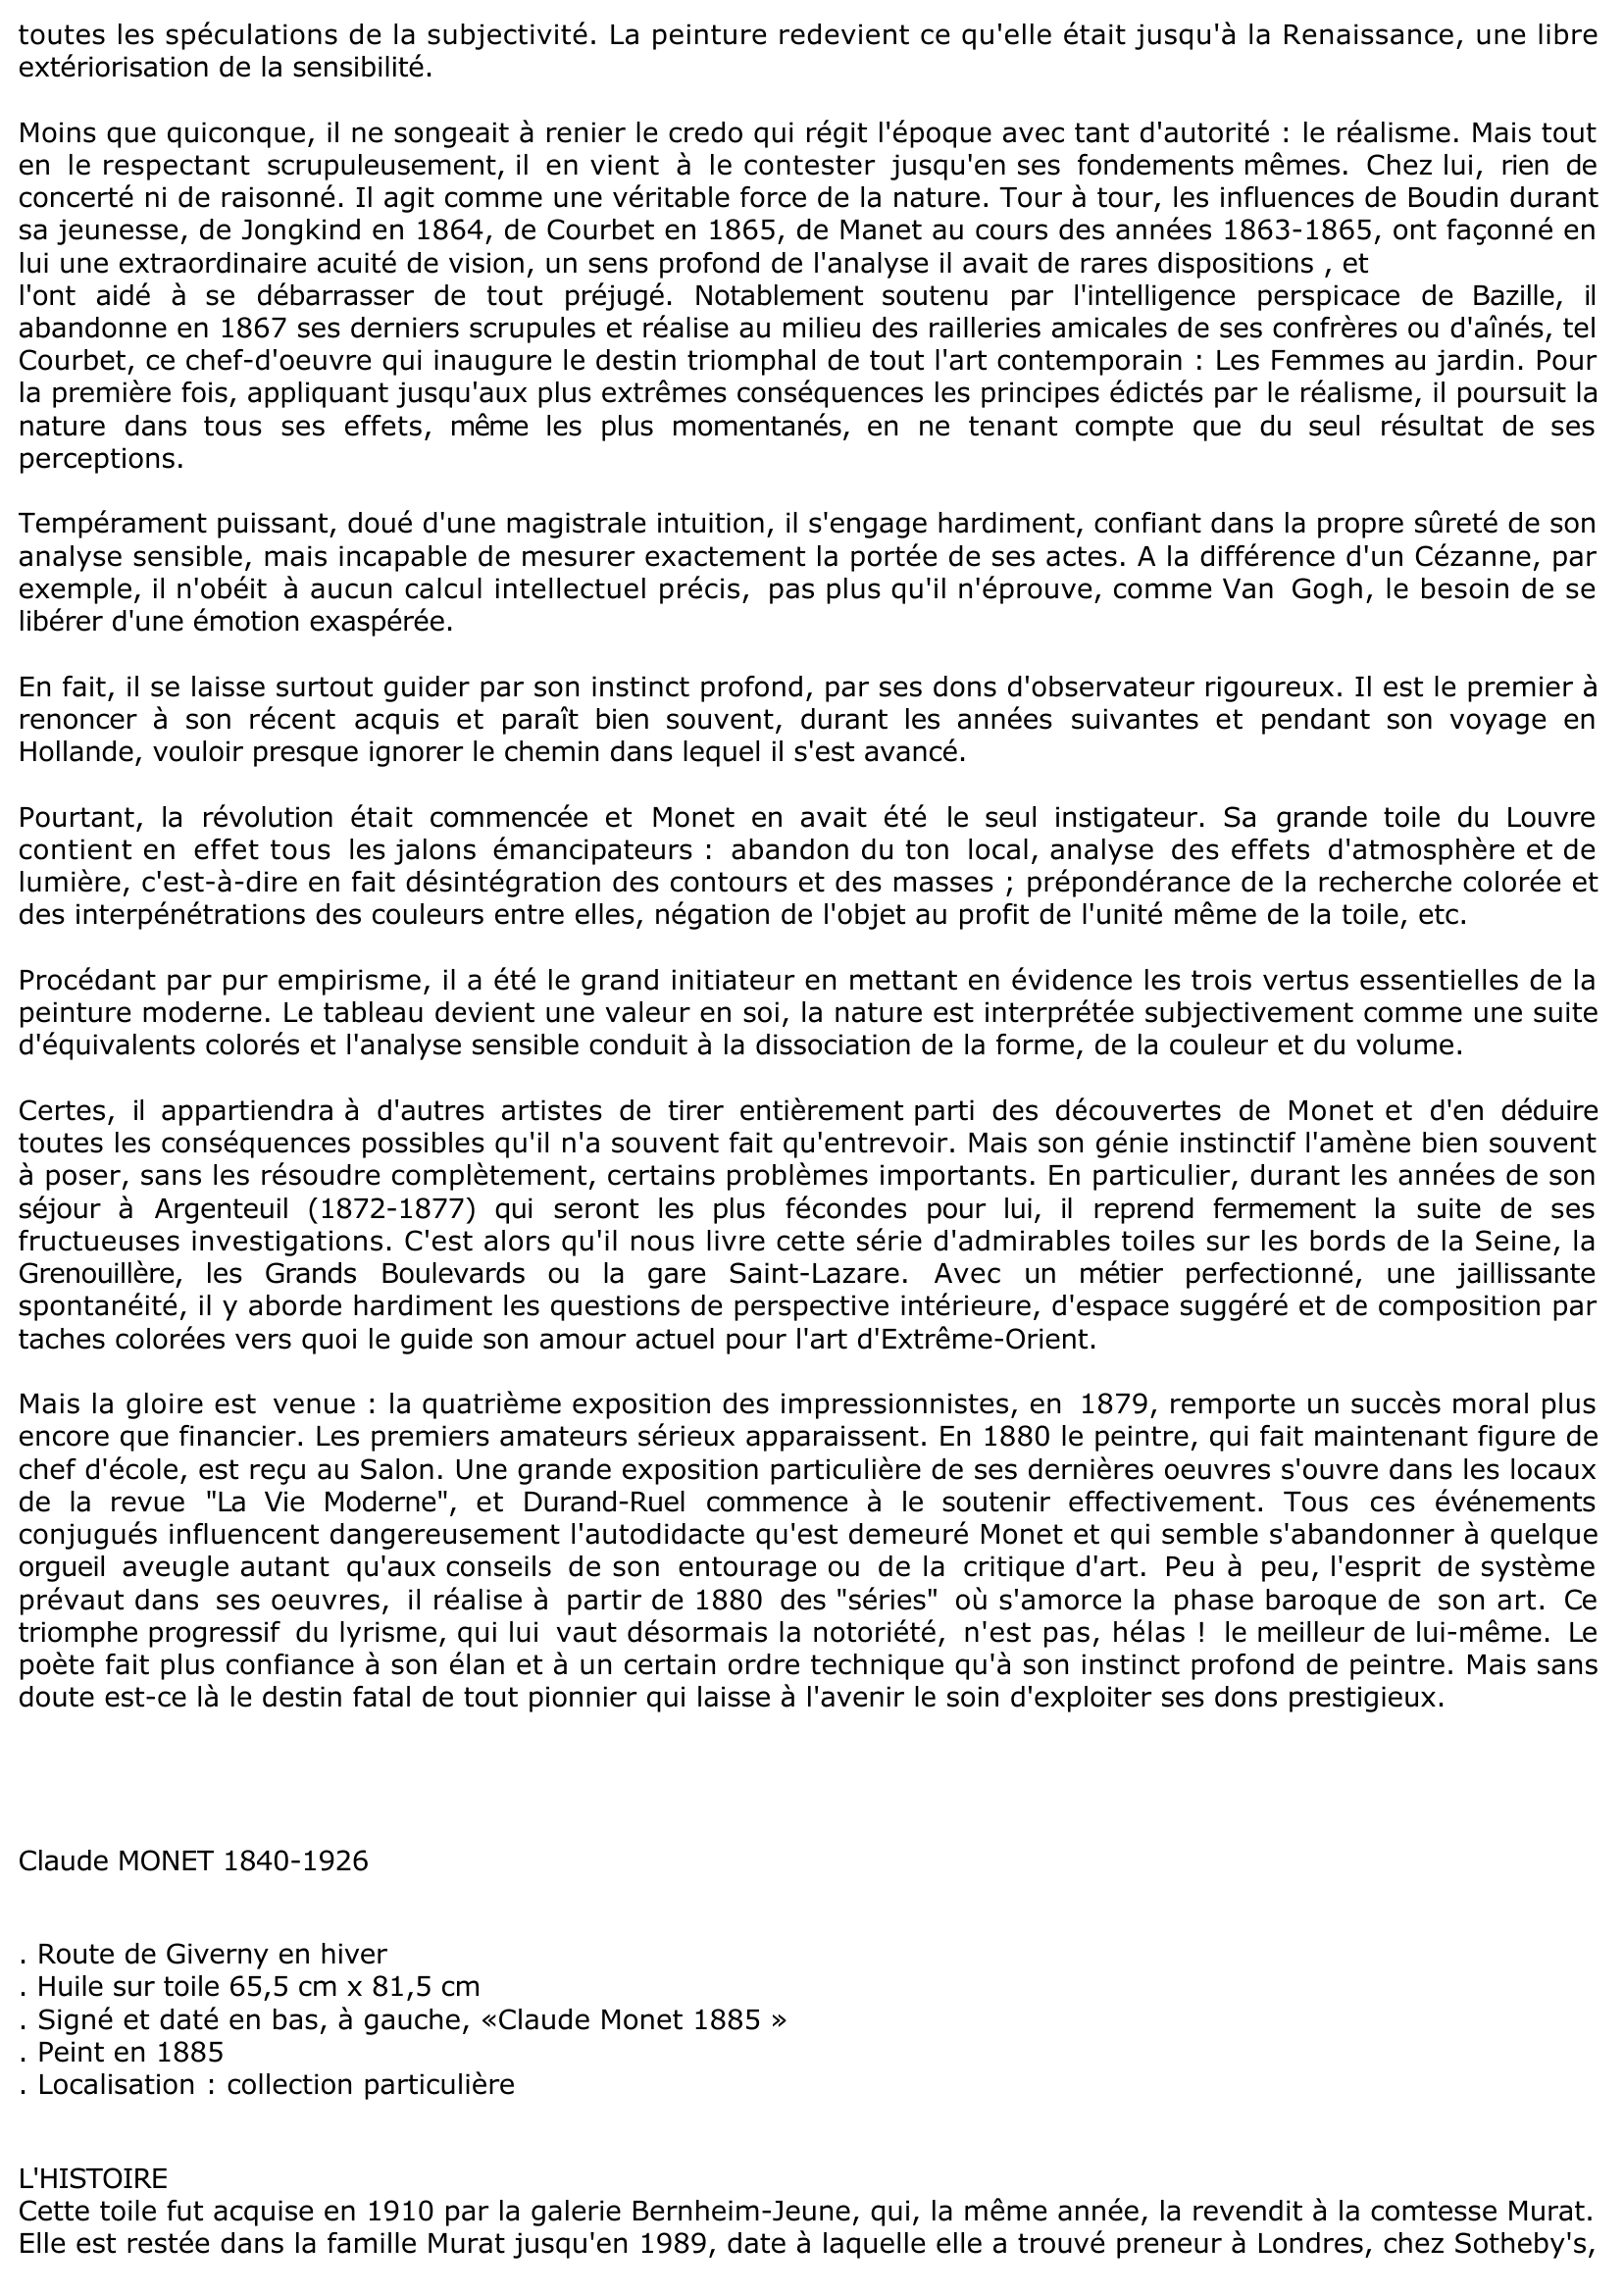 Prévisualisation du document Claude MONET: ROUTE DE GIVERNY EN HIVER